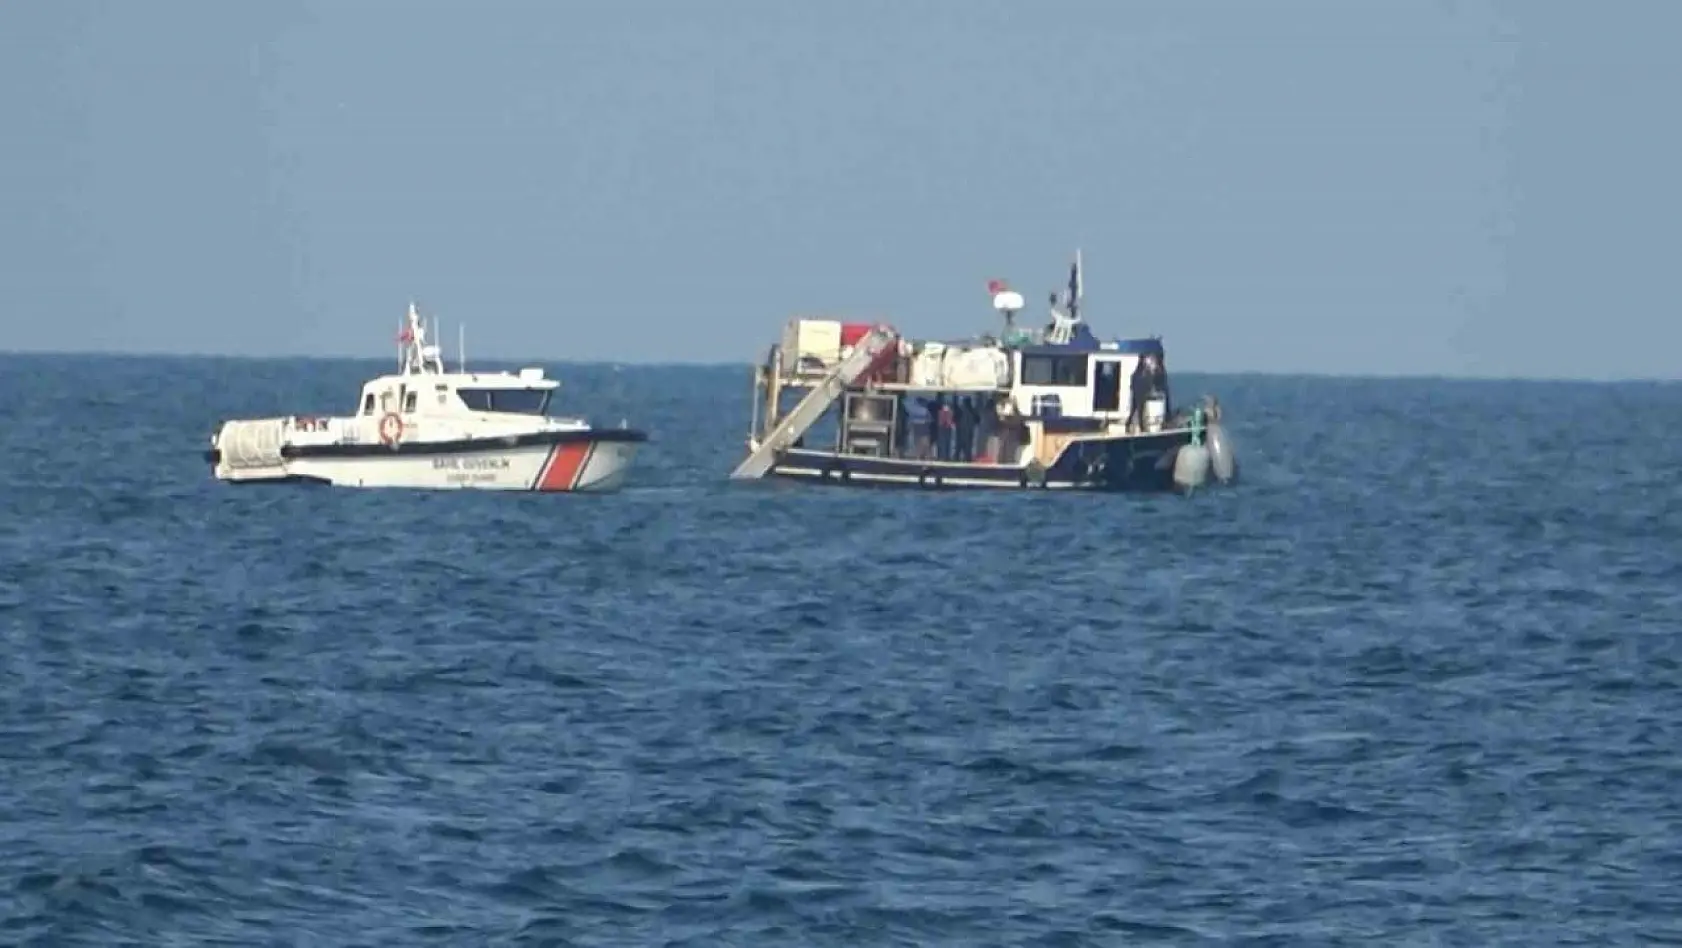 Marmara Denizi'nde kayıp mürettebata ait olduğu düşünülen cansız beden bulundu